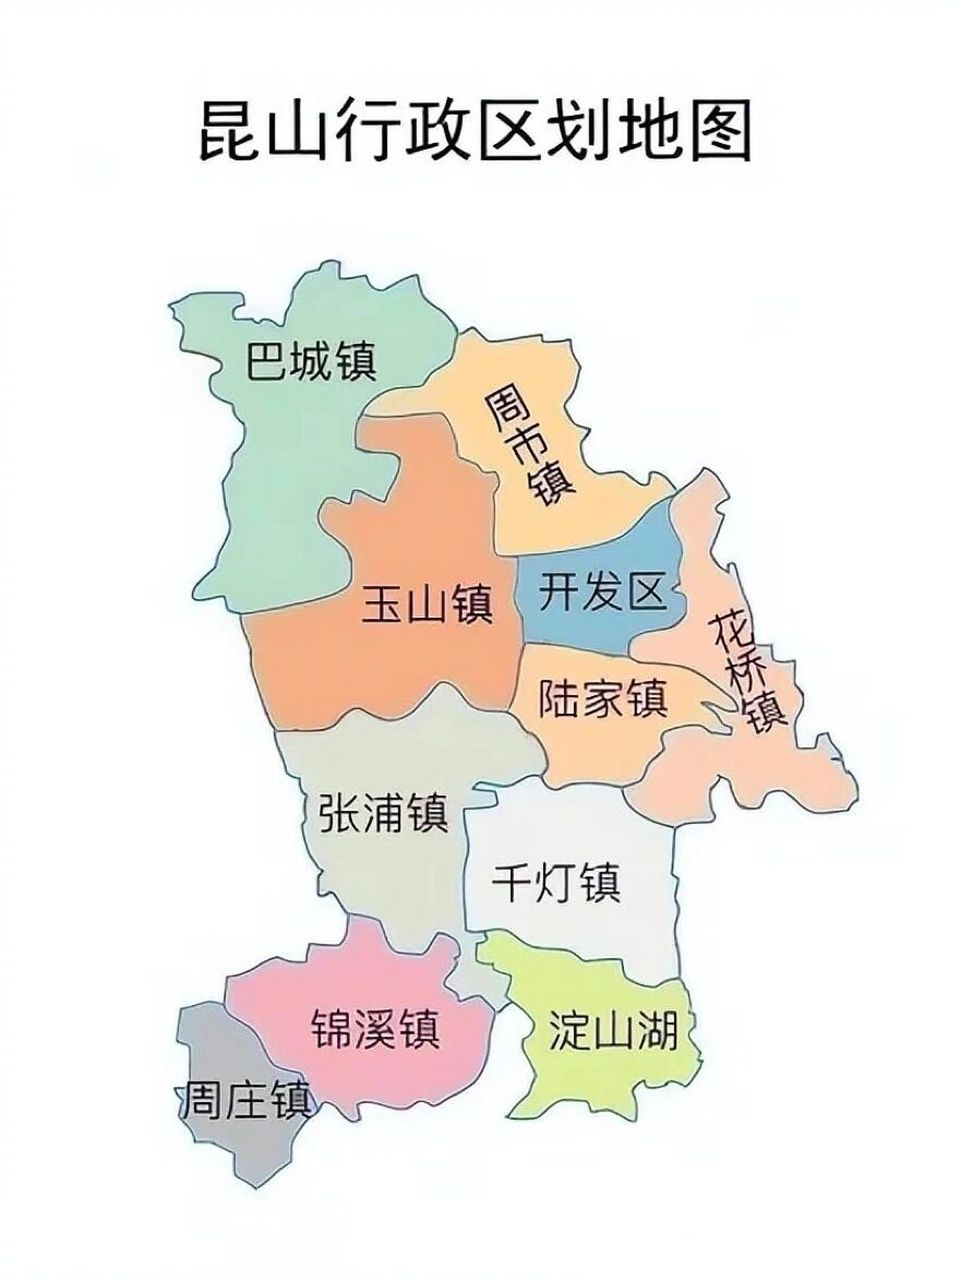 昆山行政区划图 昆山全是由镇组成